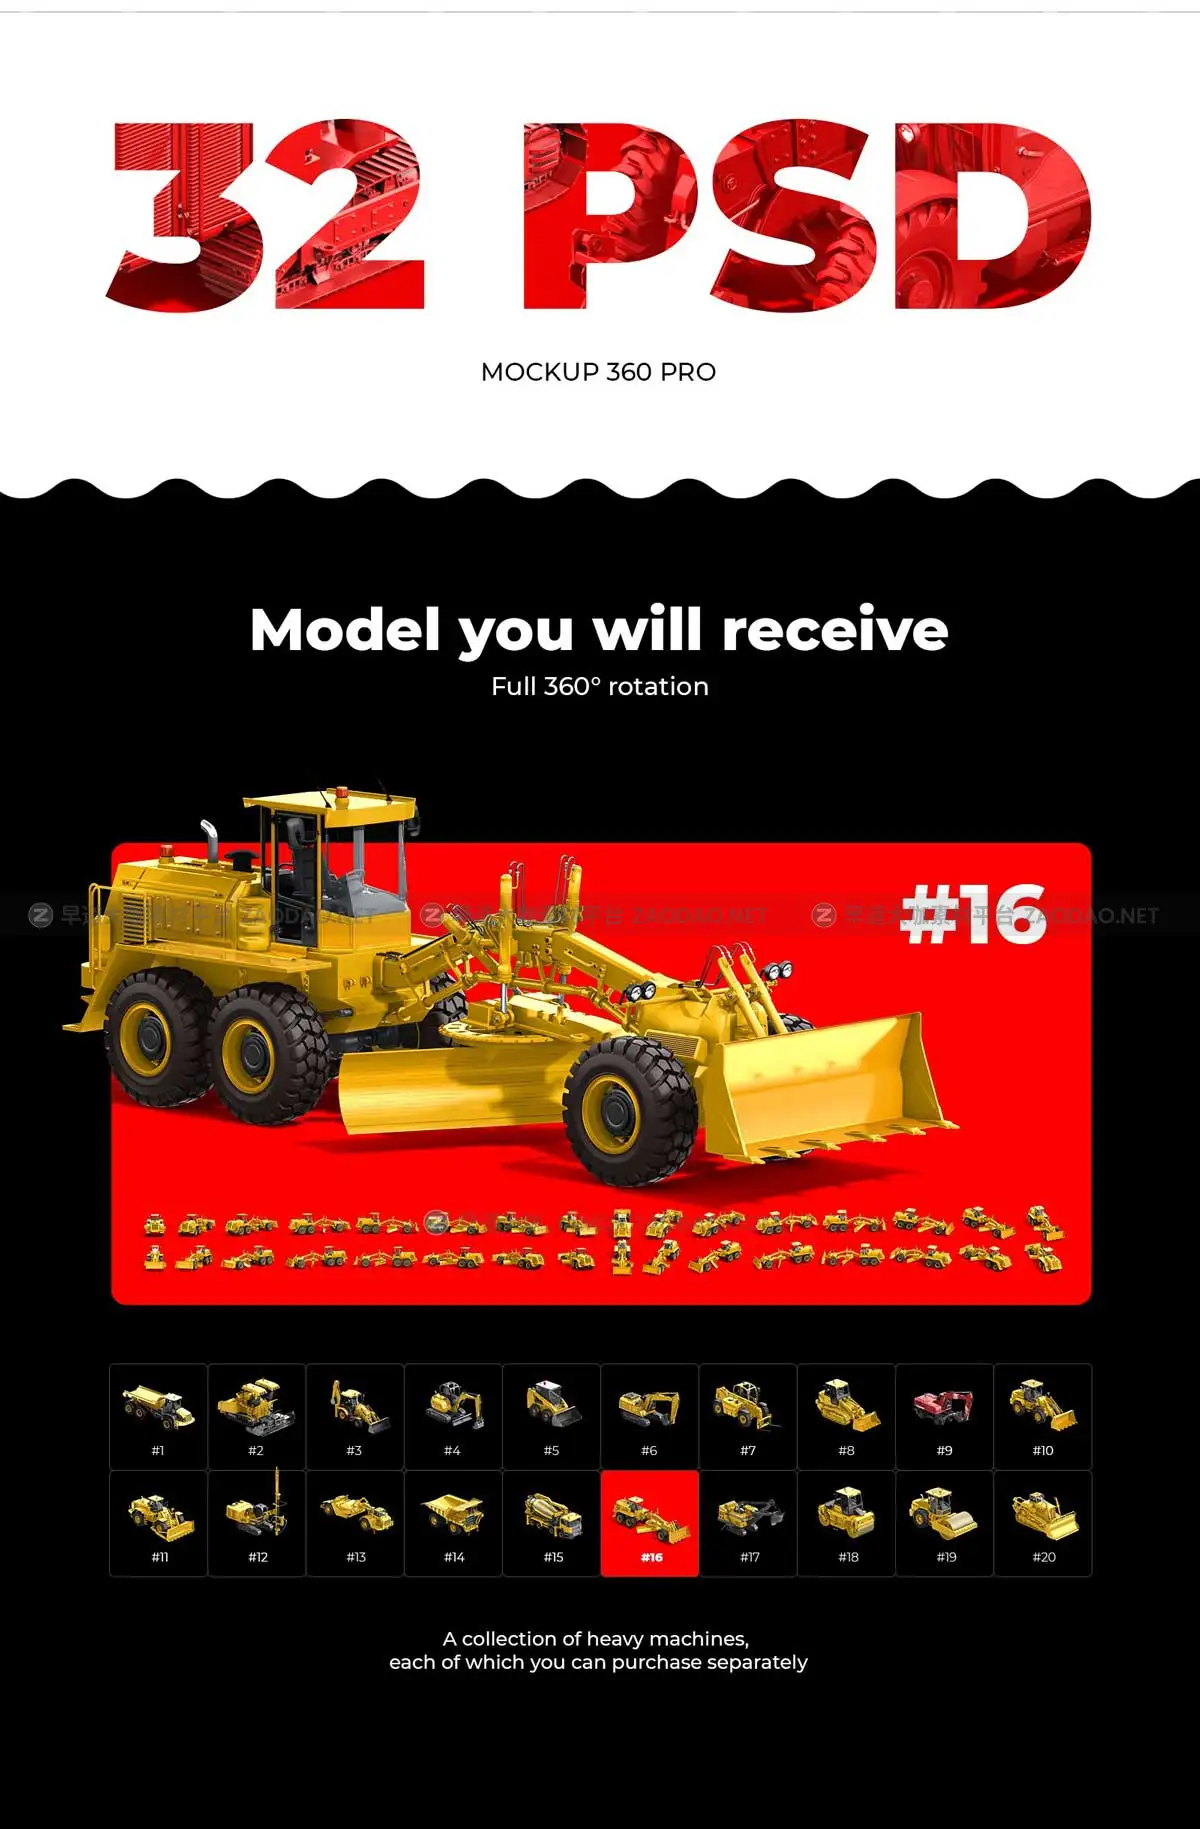 32款独特建筑工程重型机械推土机3D模型样机PSD设计素材包 32 PSD Mockup 360 Heavy Machines #16插图2